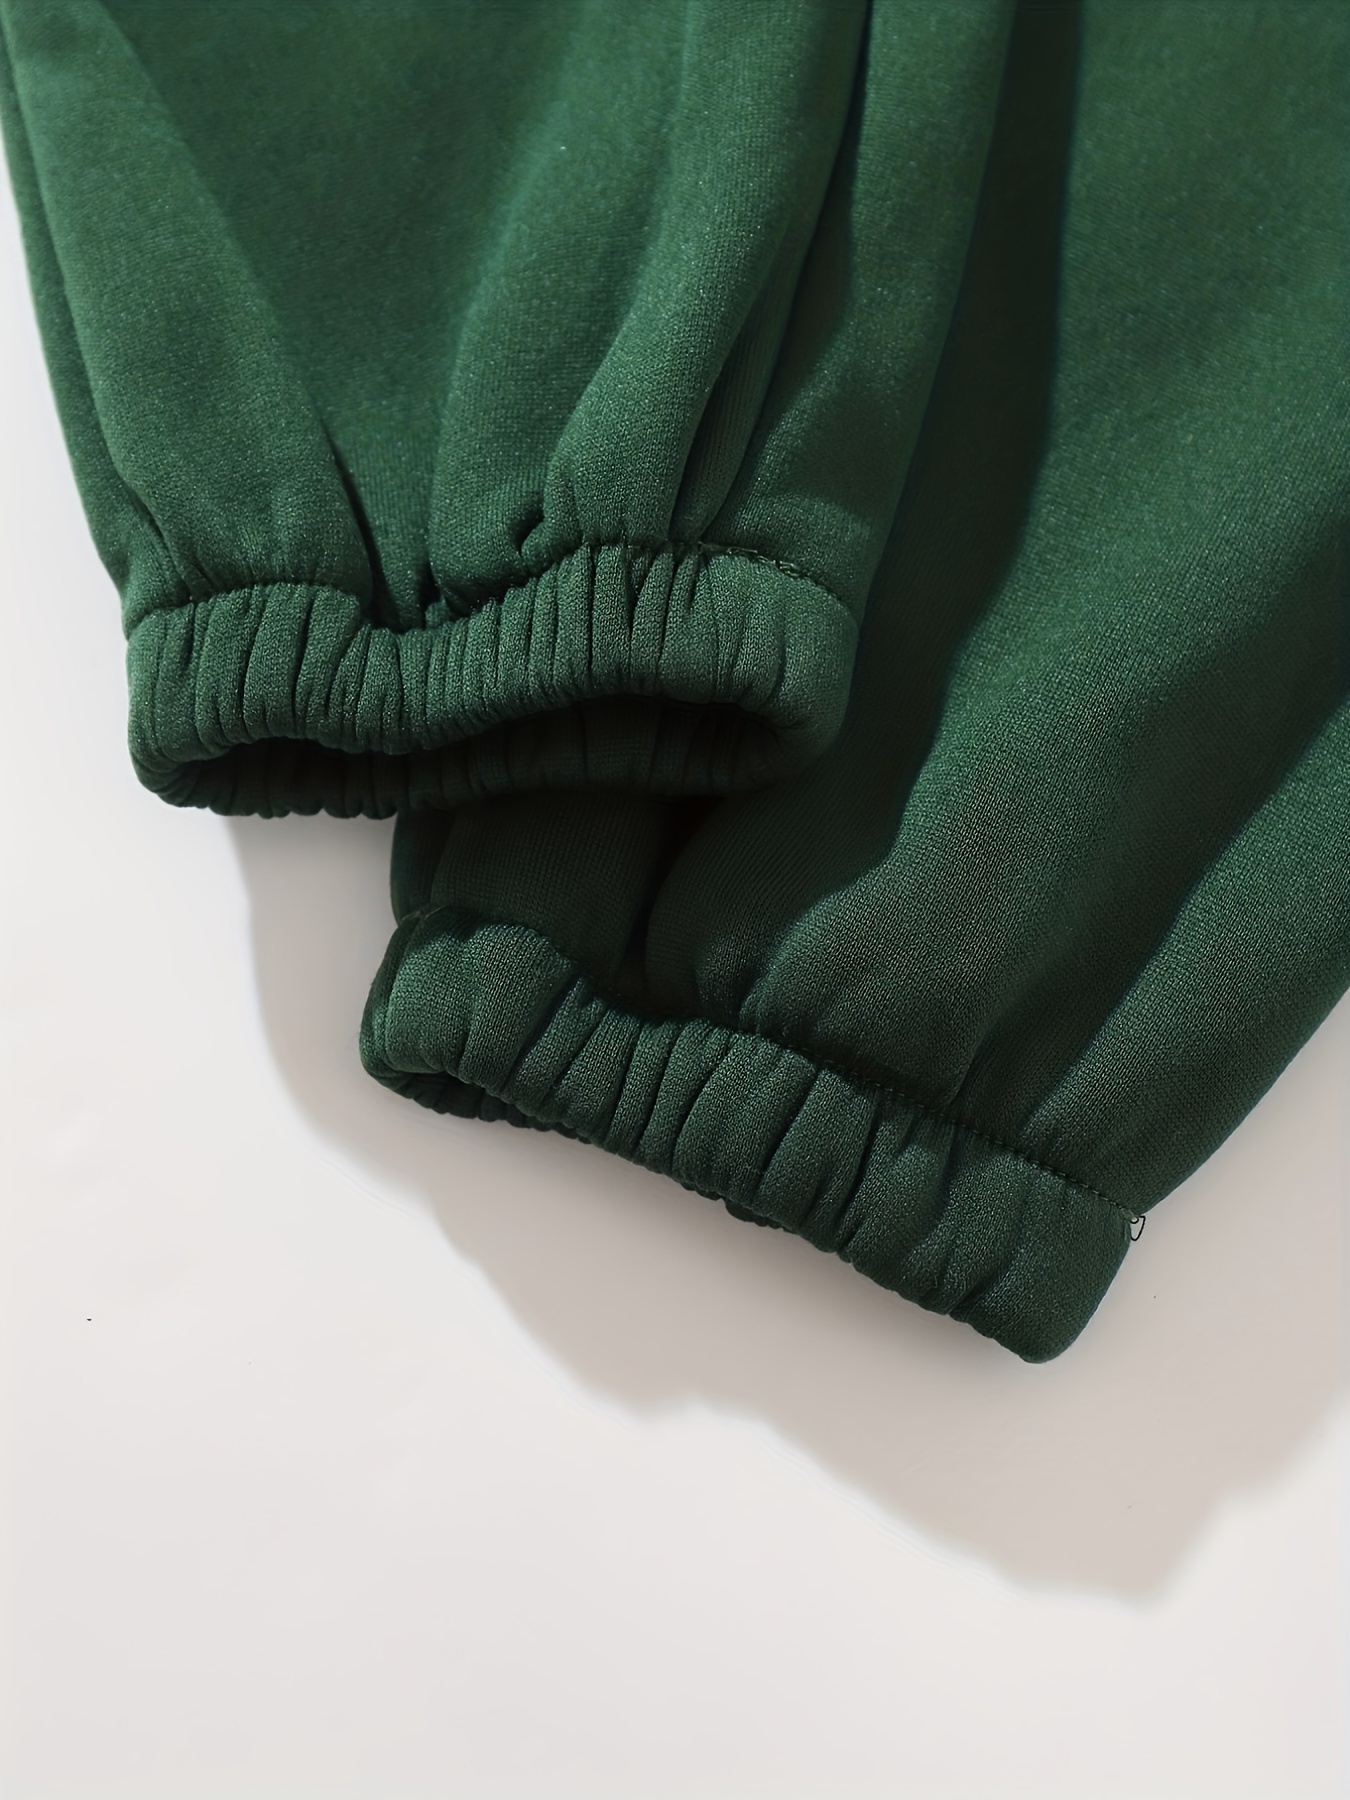 Solid Dark Green Women's Sweatpants (Women's) 